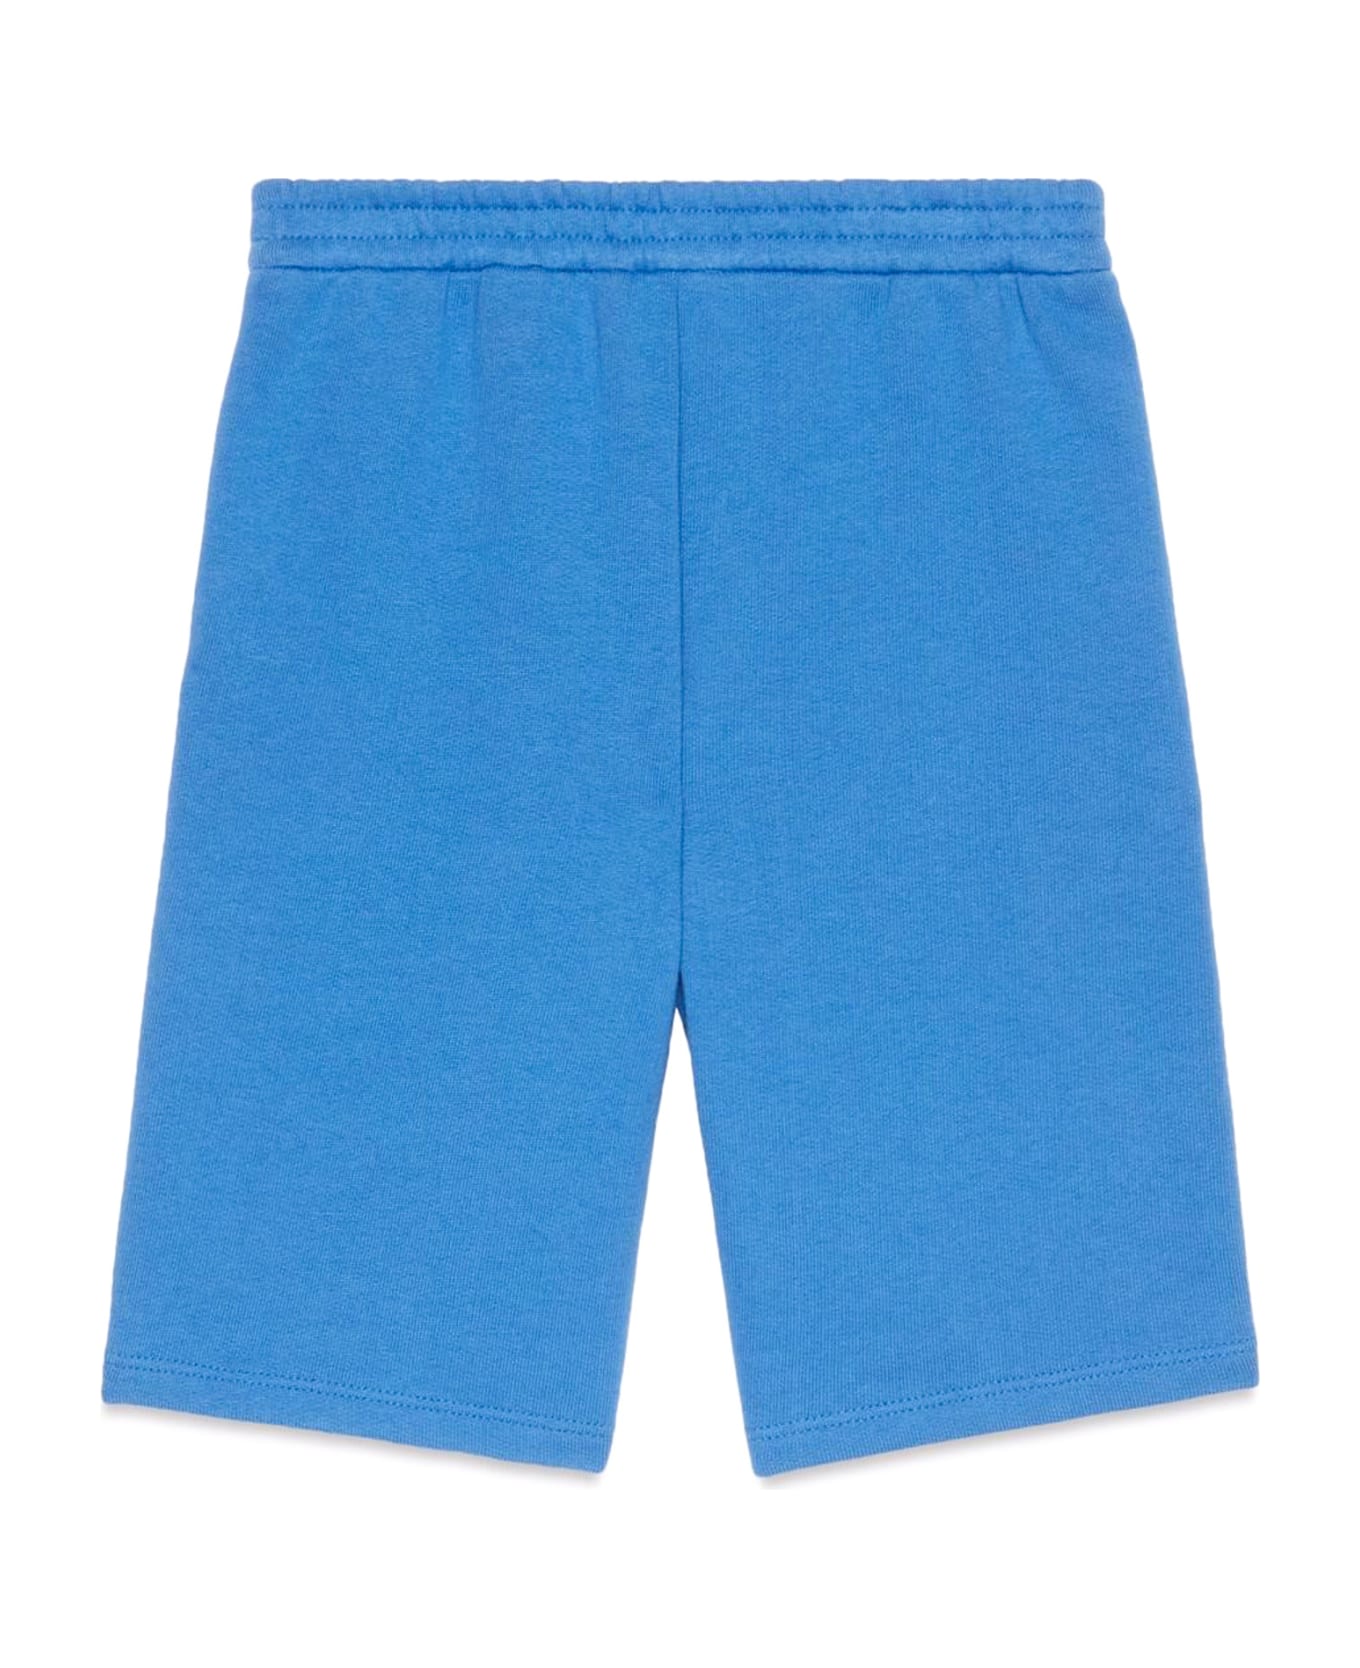 Gucci Children's Cotton Shorts - Blue